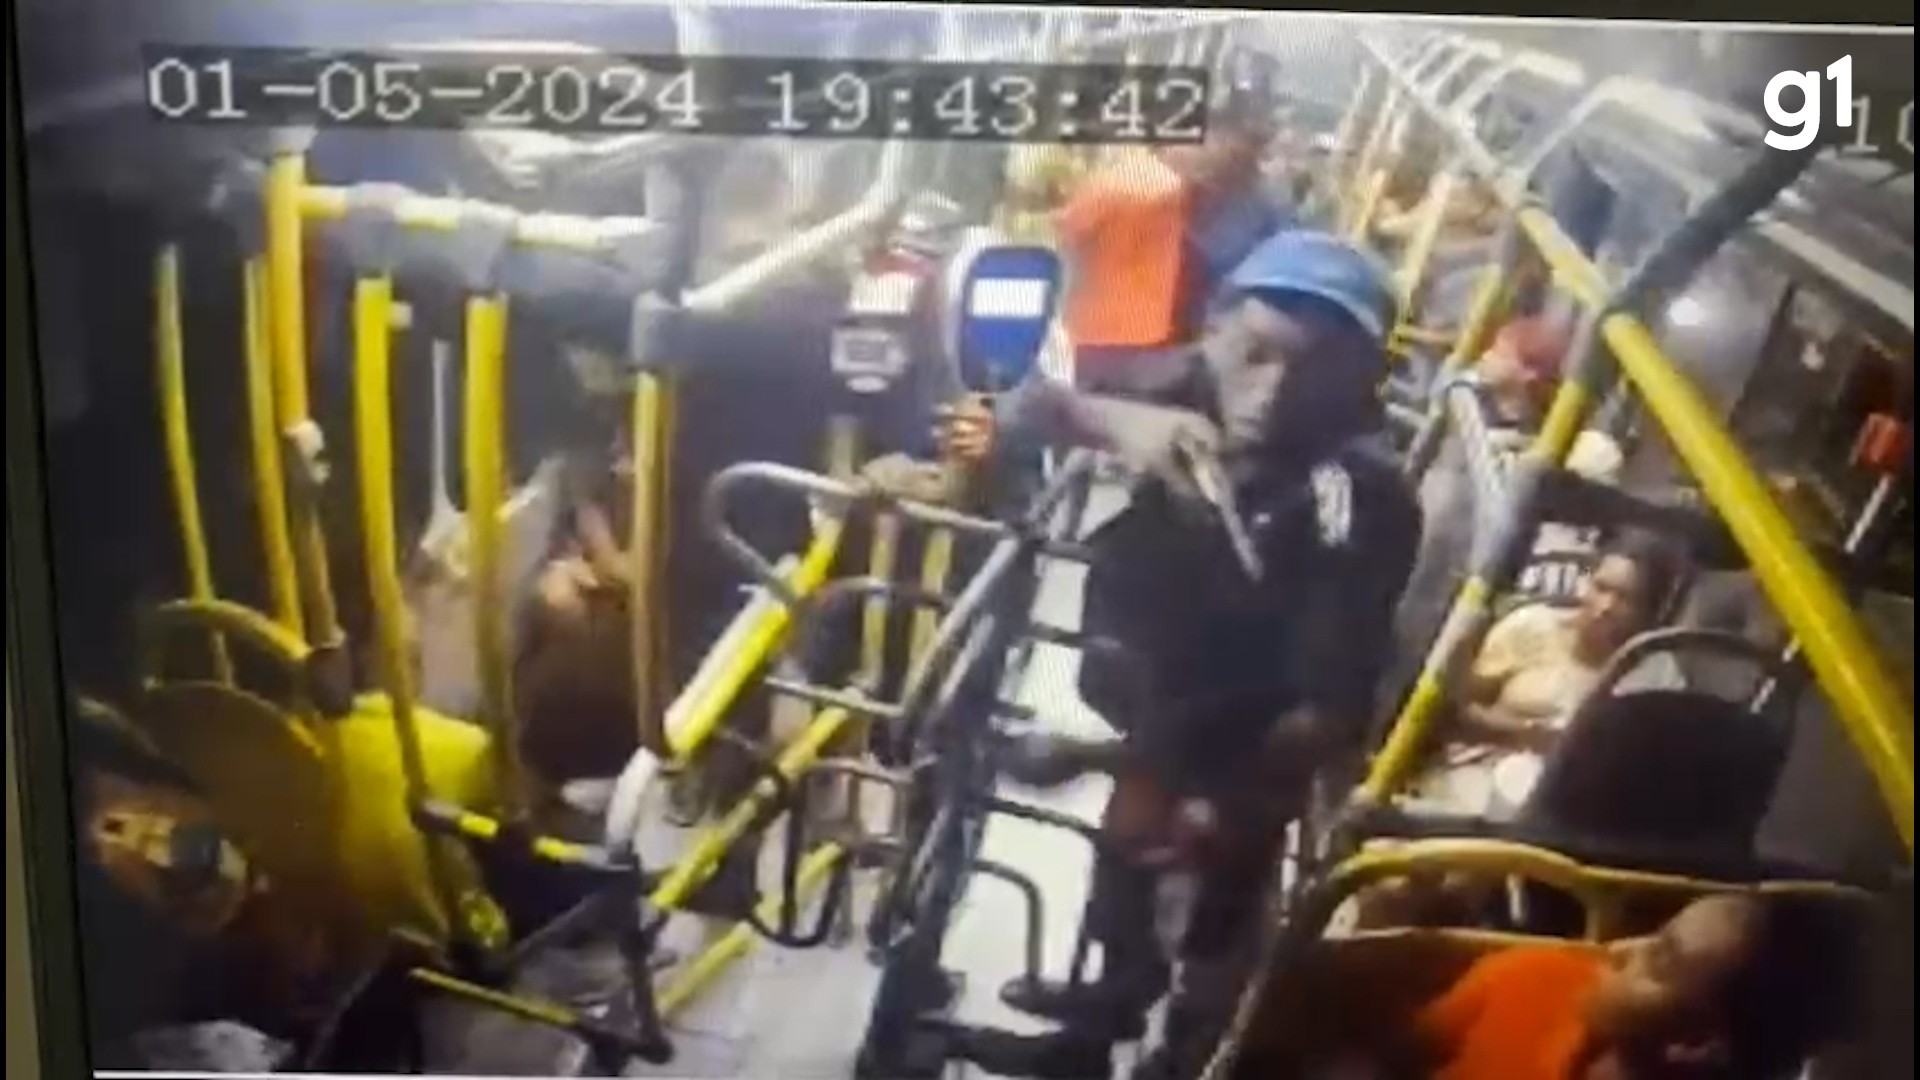 Jovem morto após ser baleado em assalto a ônibus em SL não reagiu durante o crime, mostram imagens de câmera de segurança; veja o vídeo